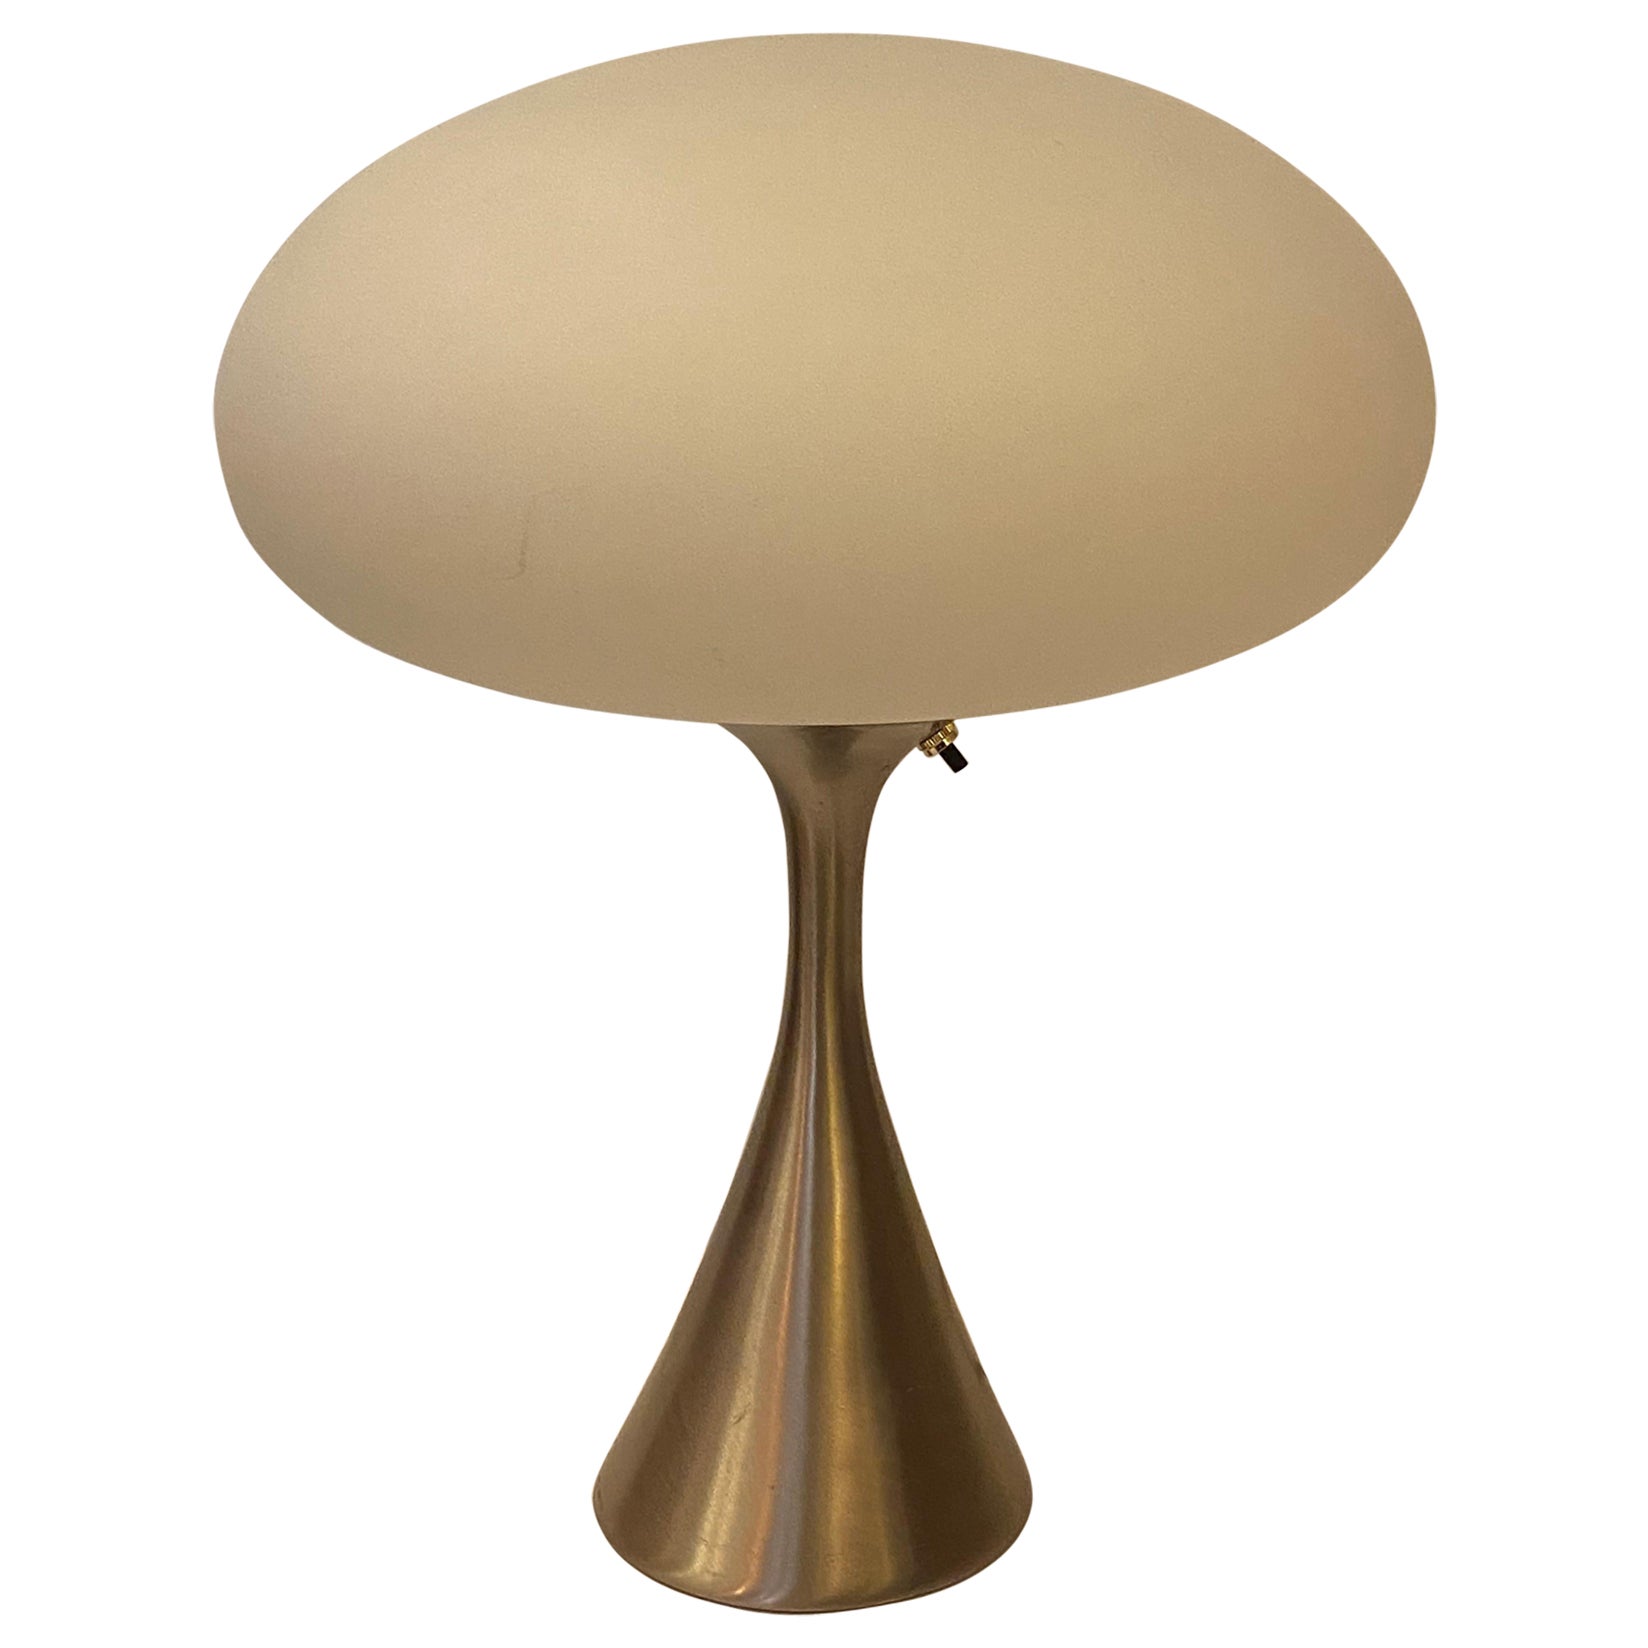 Laurel Stainless Finish Mushroom Lamp For Sale